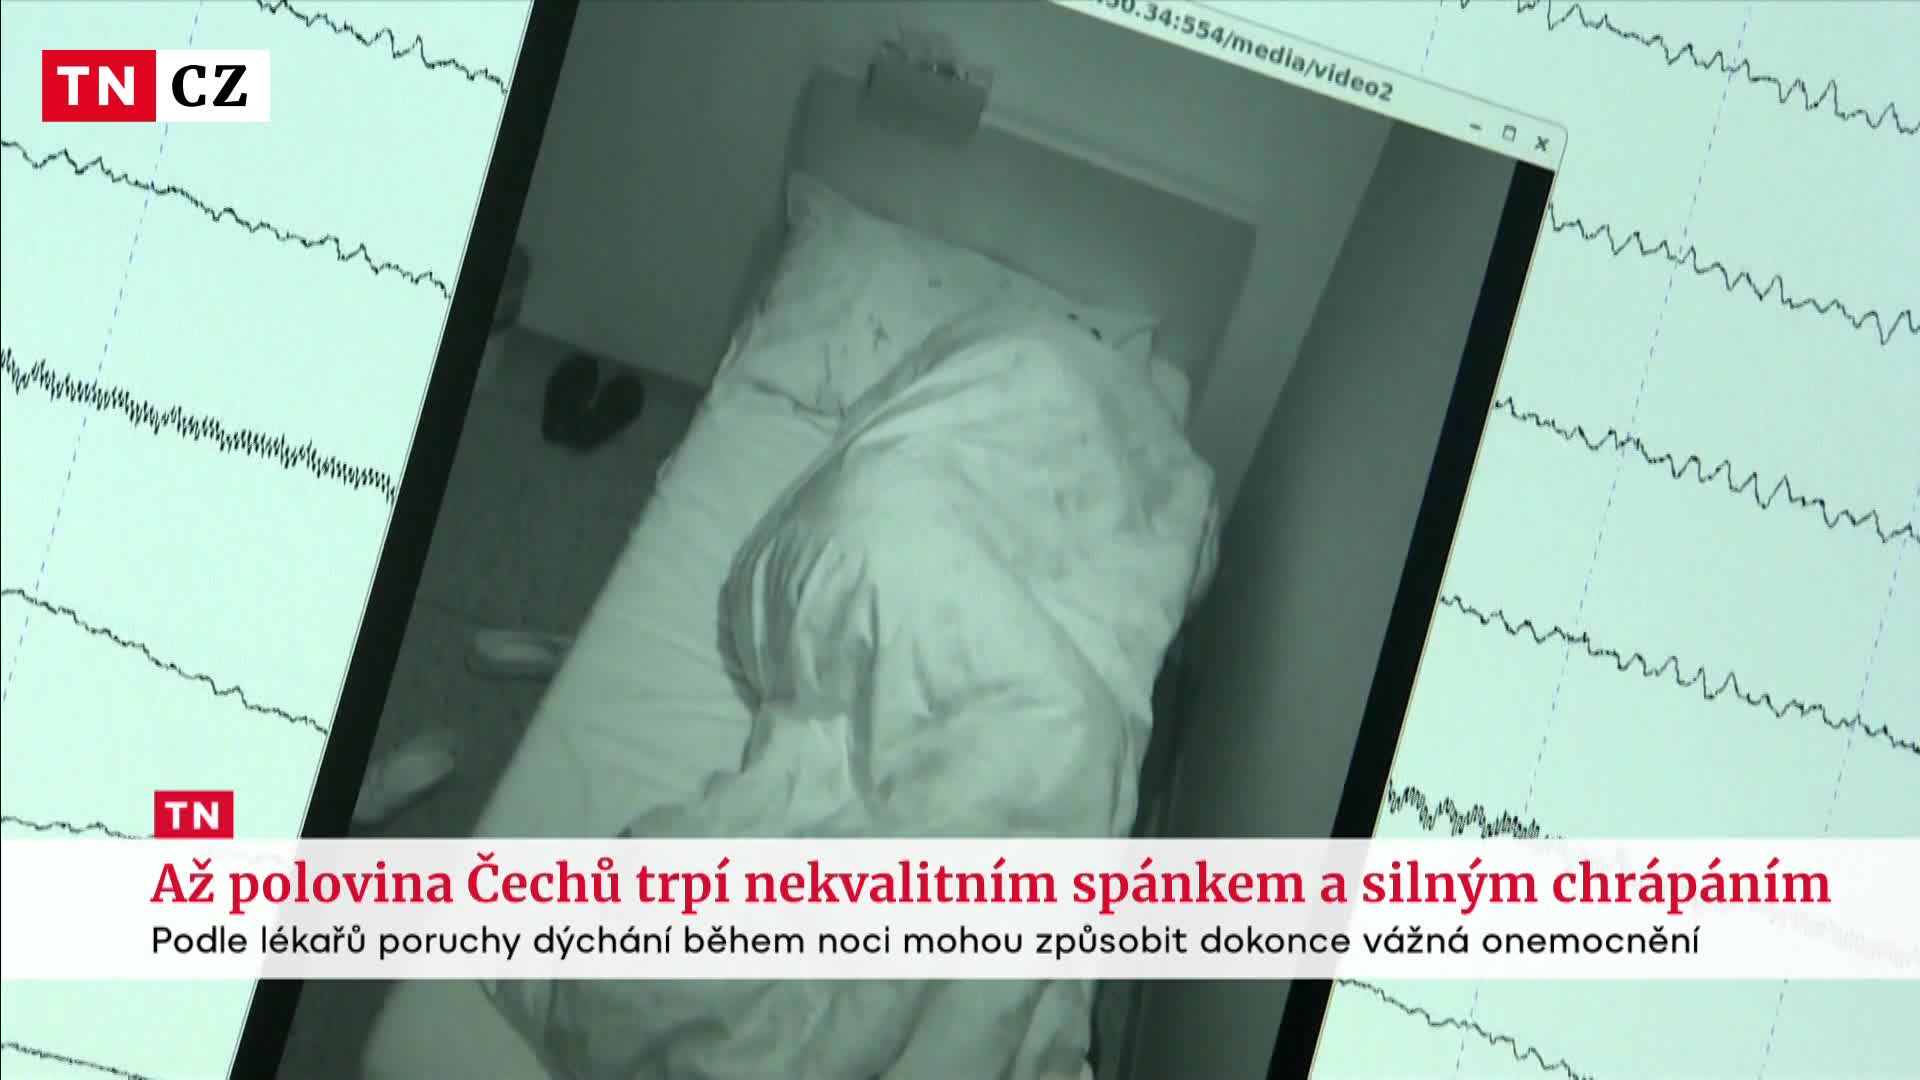 Podle lékařů až polovina Čechů trpí nekvalitním spánkem a silným chrápáním